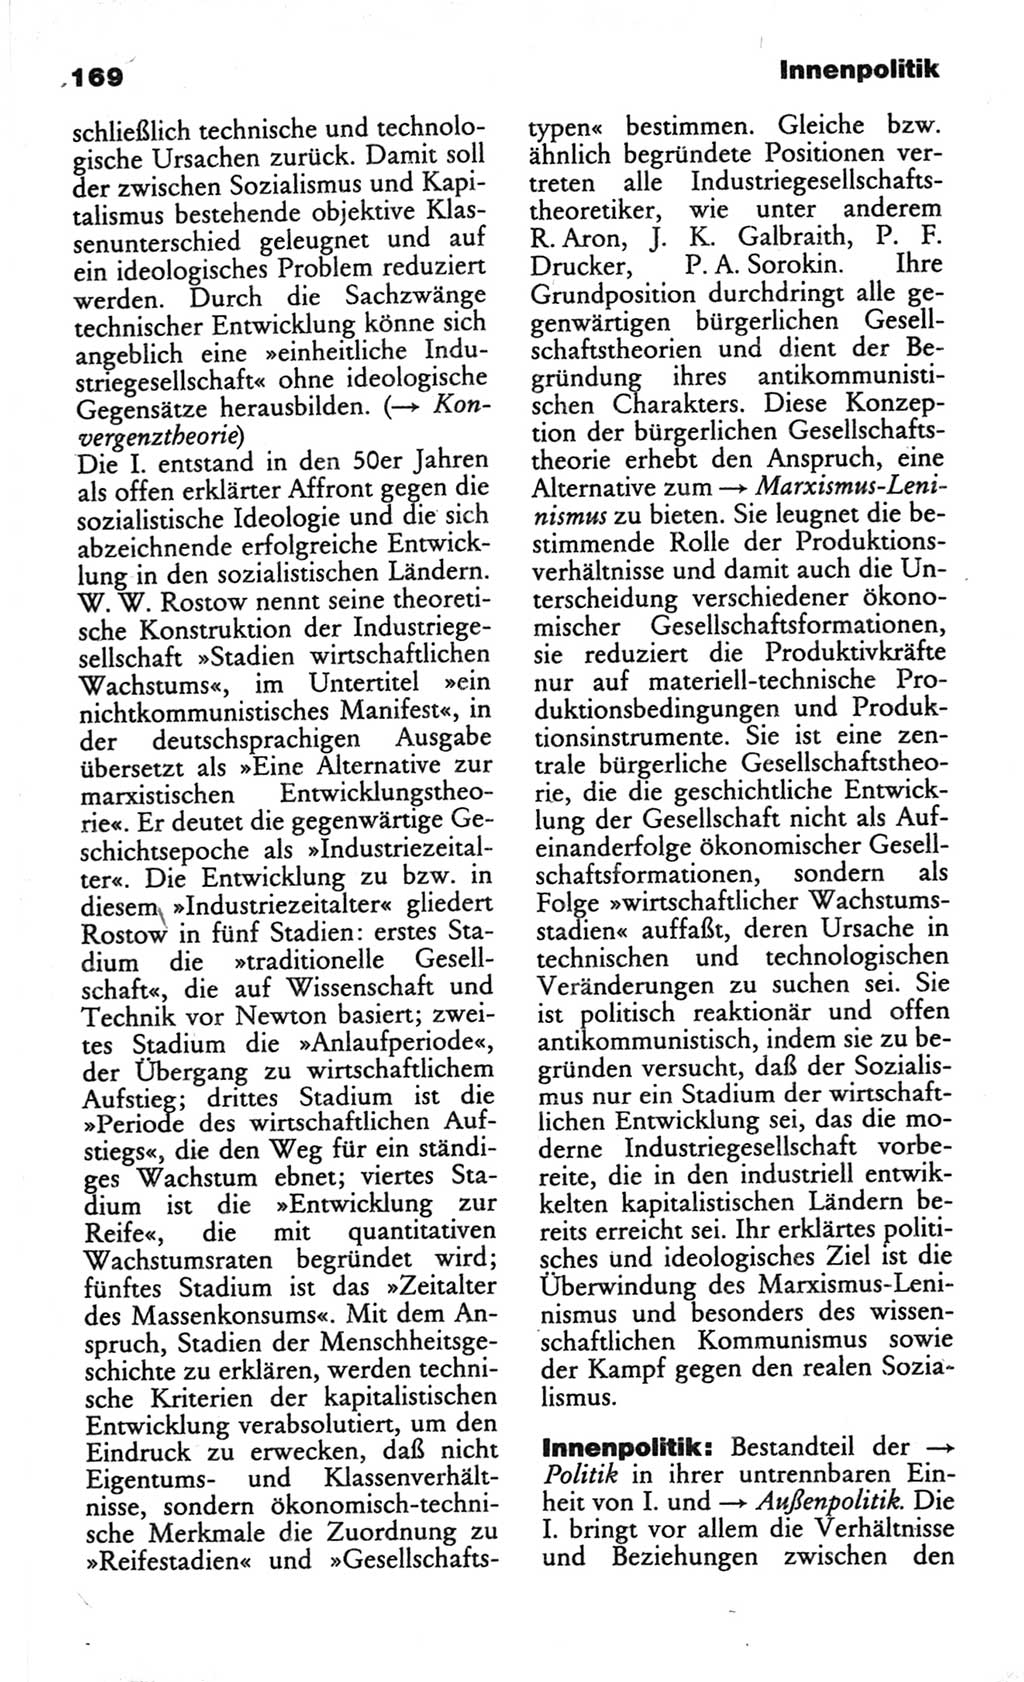 Wörterbuch des wissenschaftlichen Kommunismus [Deutsche Demokratische Republik (DDR)] 1982, Seite 169 (Wb. wiss. Komm. DDR 1982, S. 169)